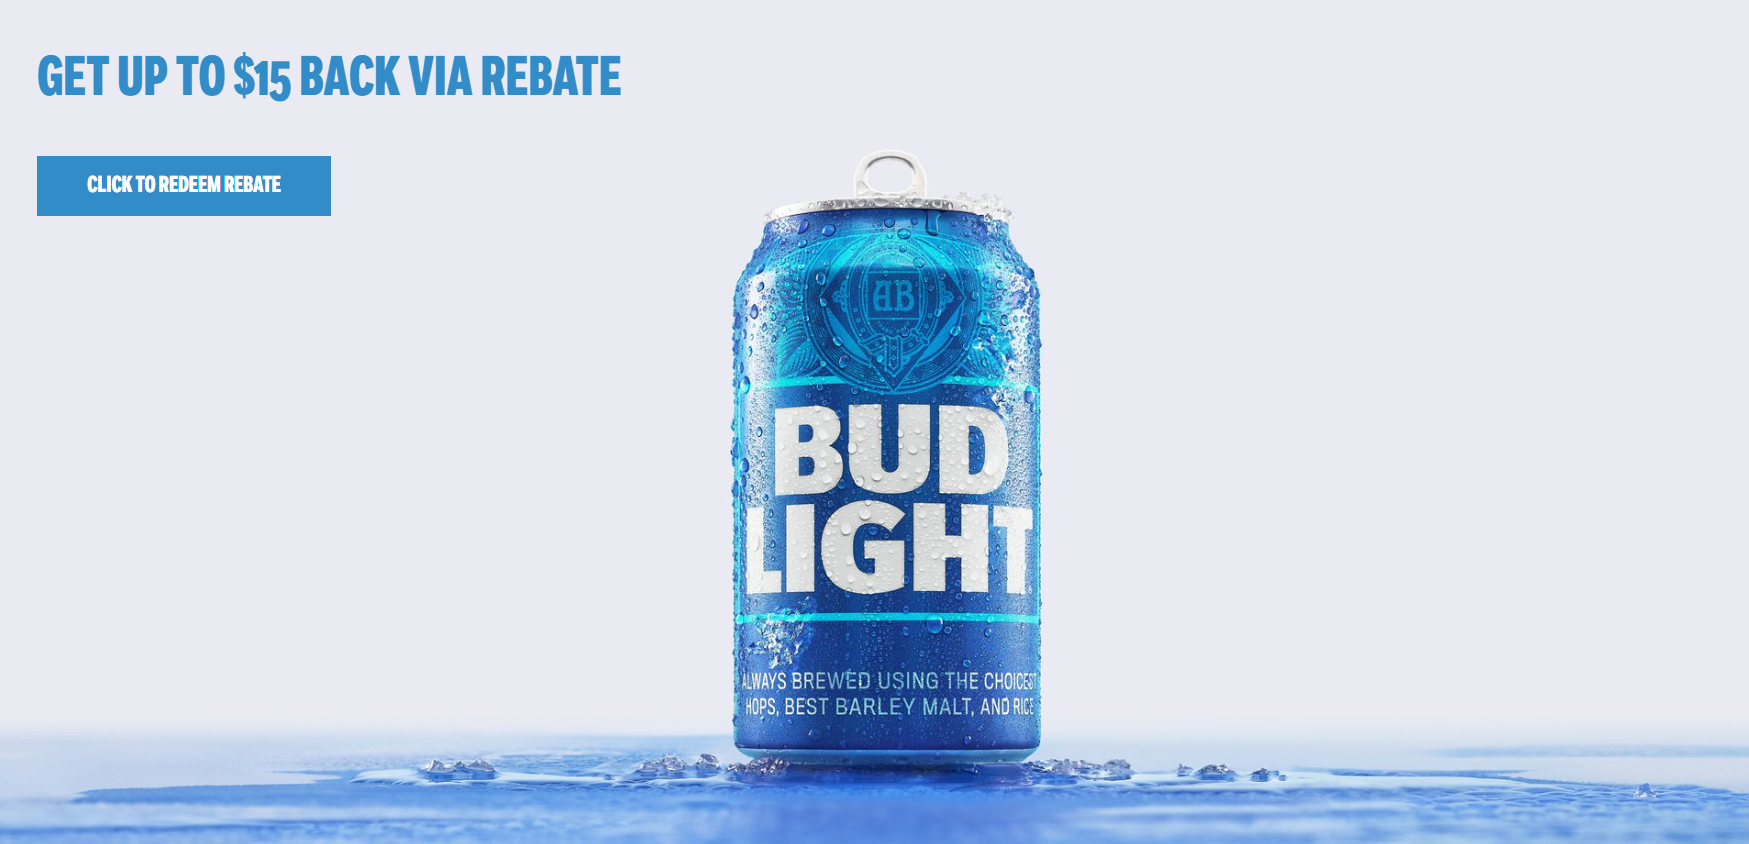 How Does Bud Light Rebate Work